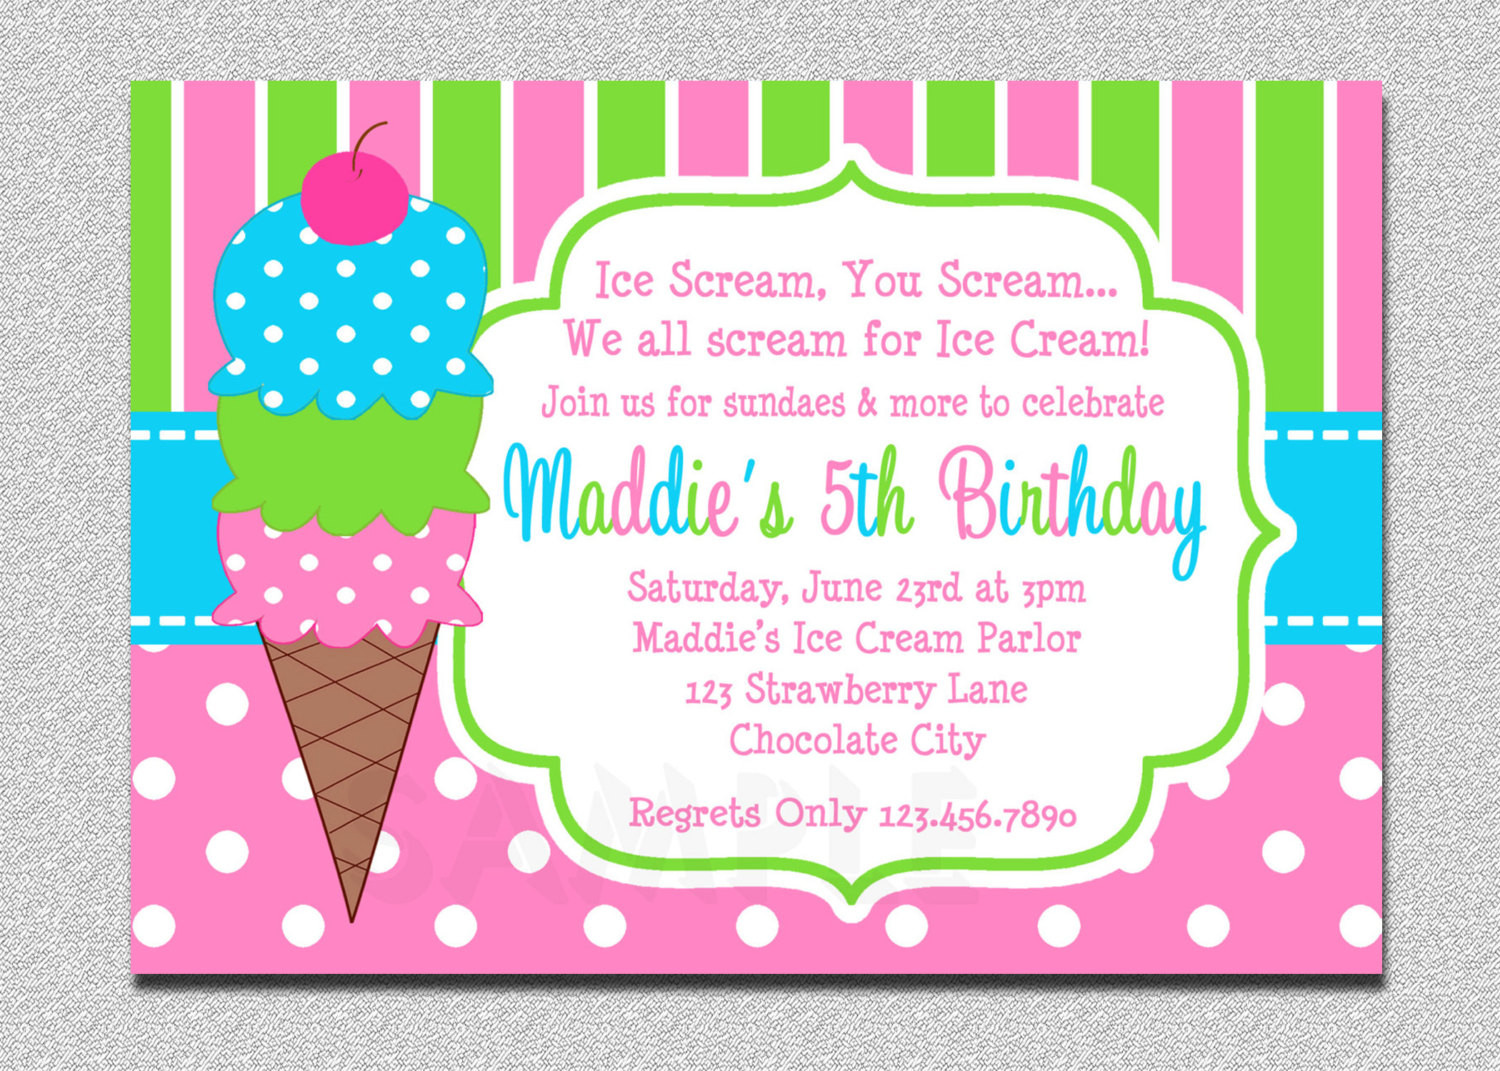 Ice Cream Birthday Party Invitations
 Ice Cream Birthday Invitations Pink and Green Ice Cream